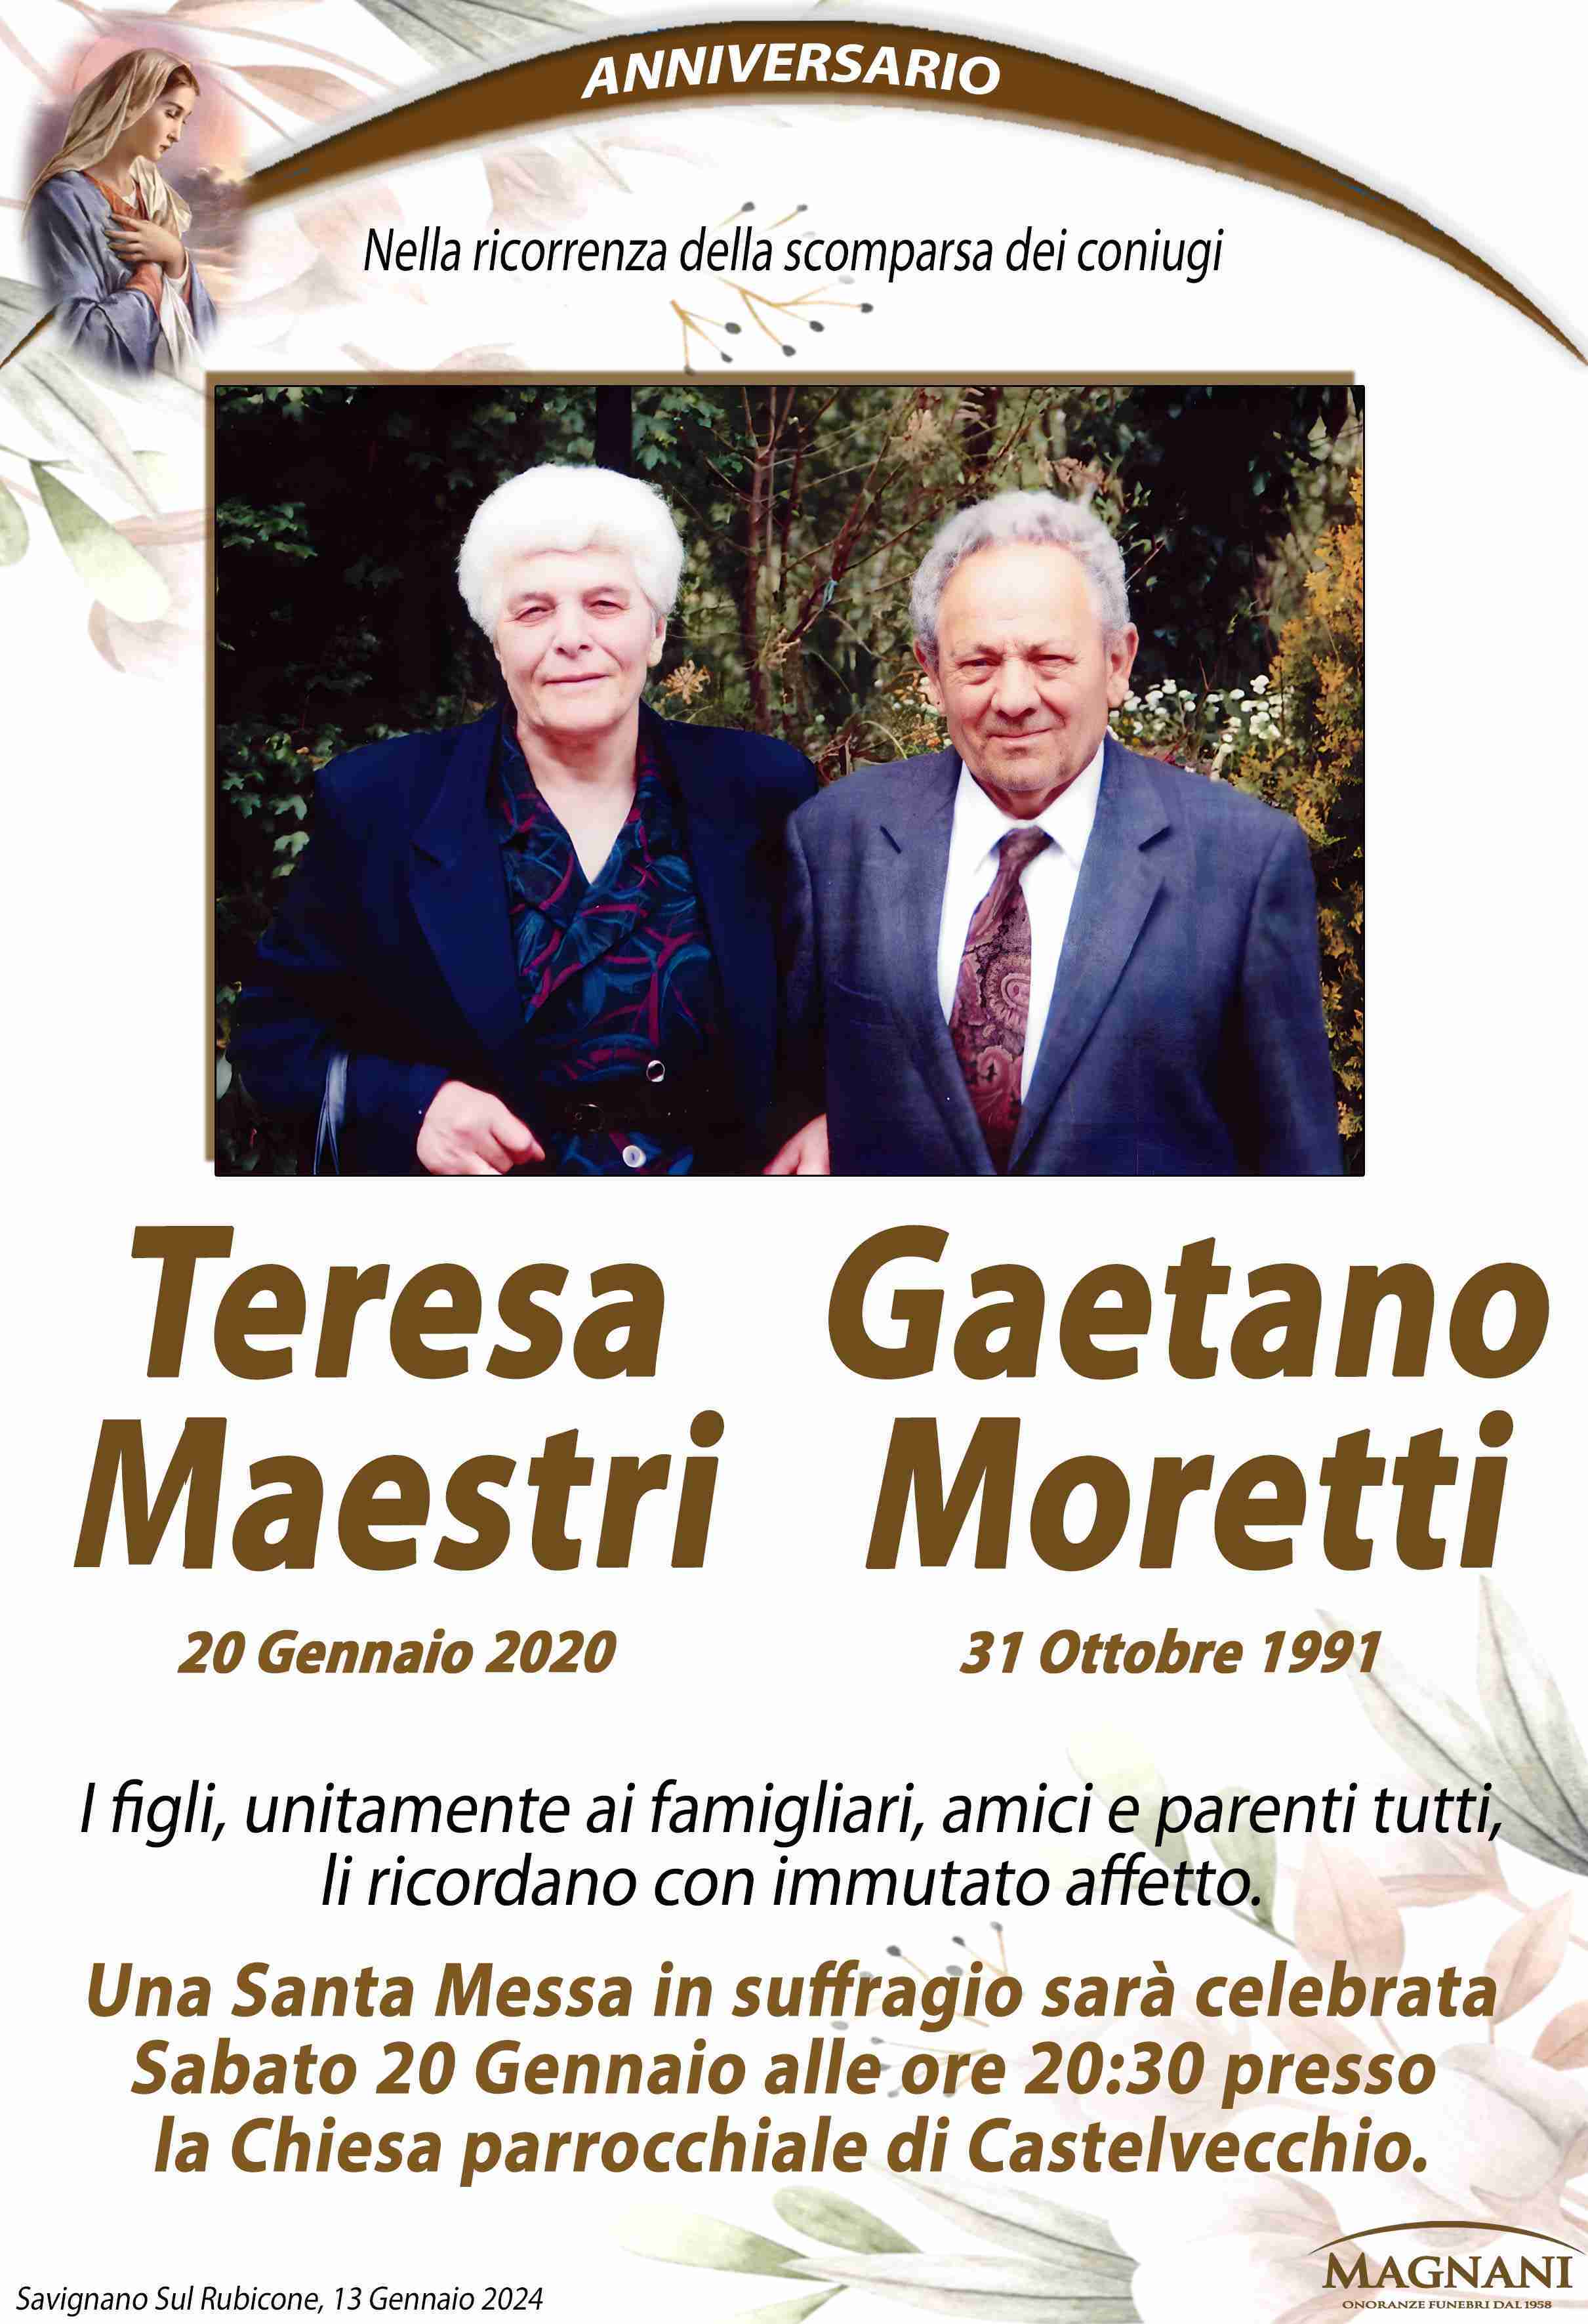 Teresa Maestri e Gaetano Moretti